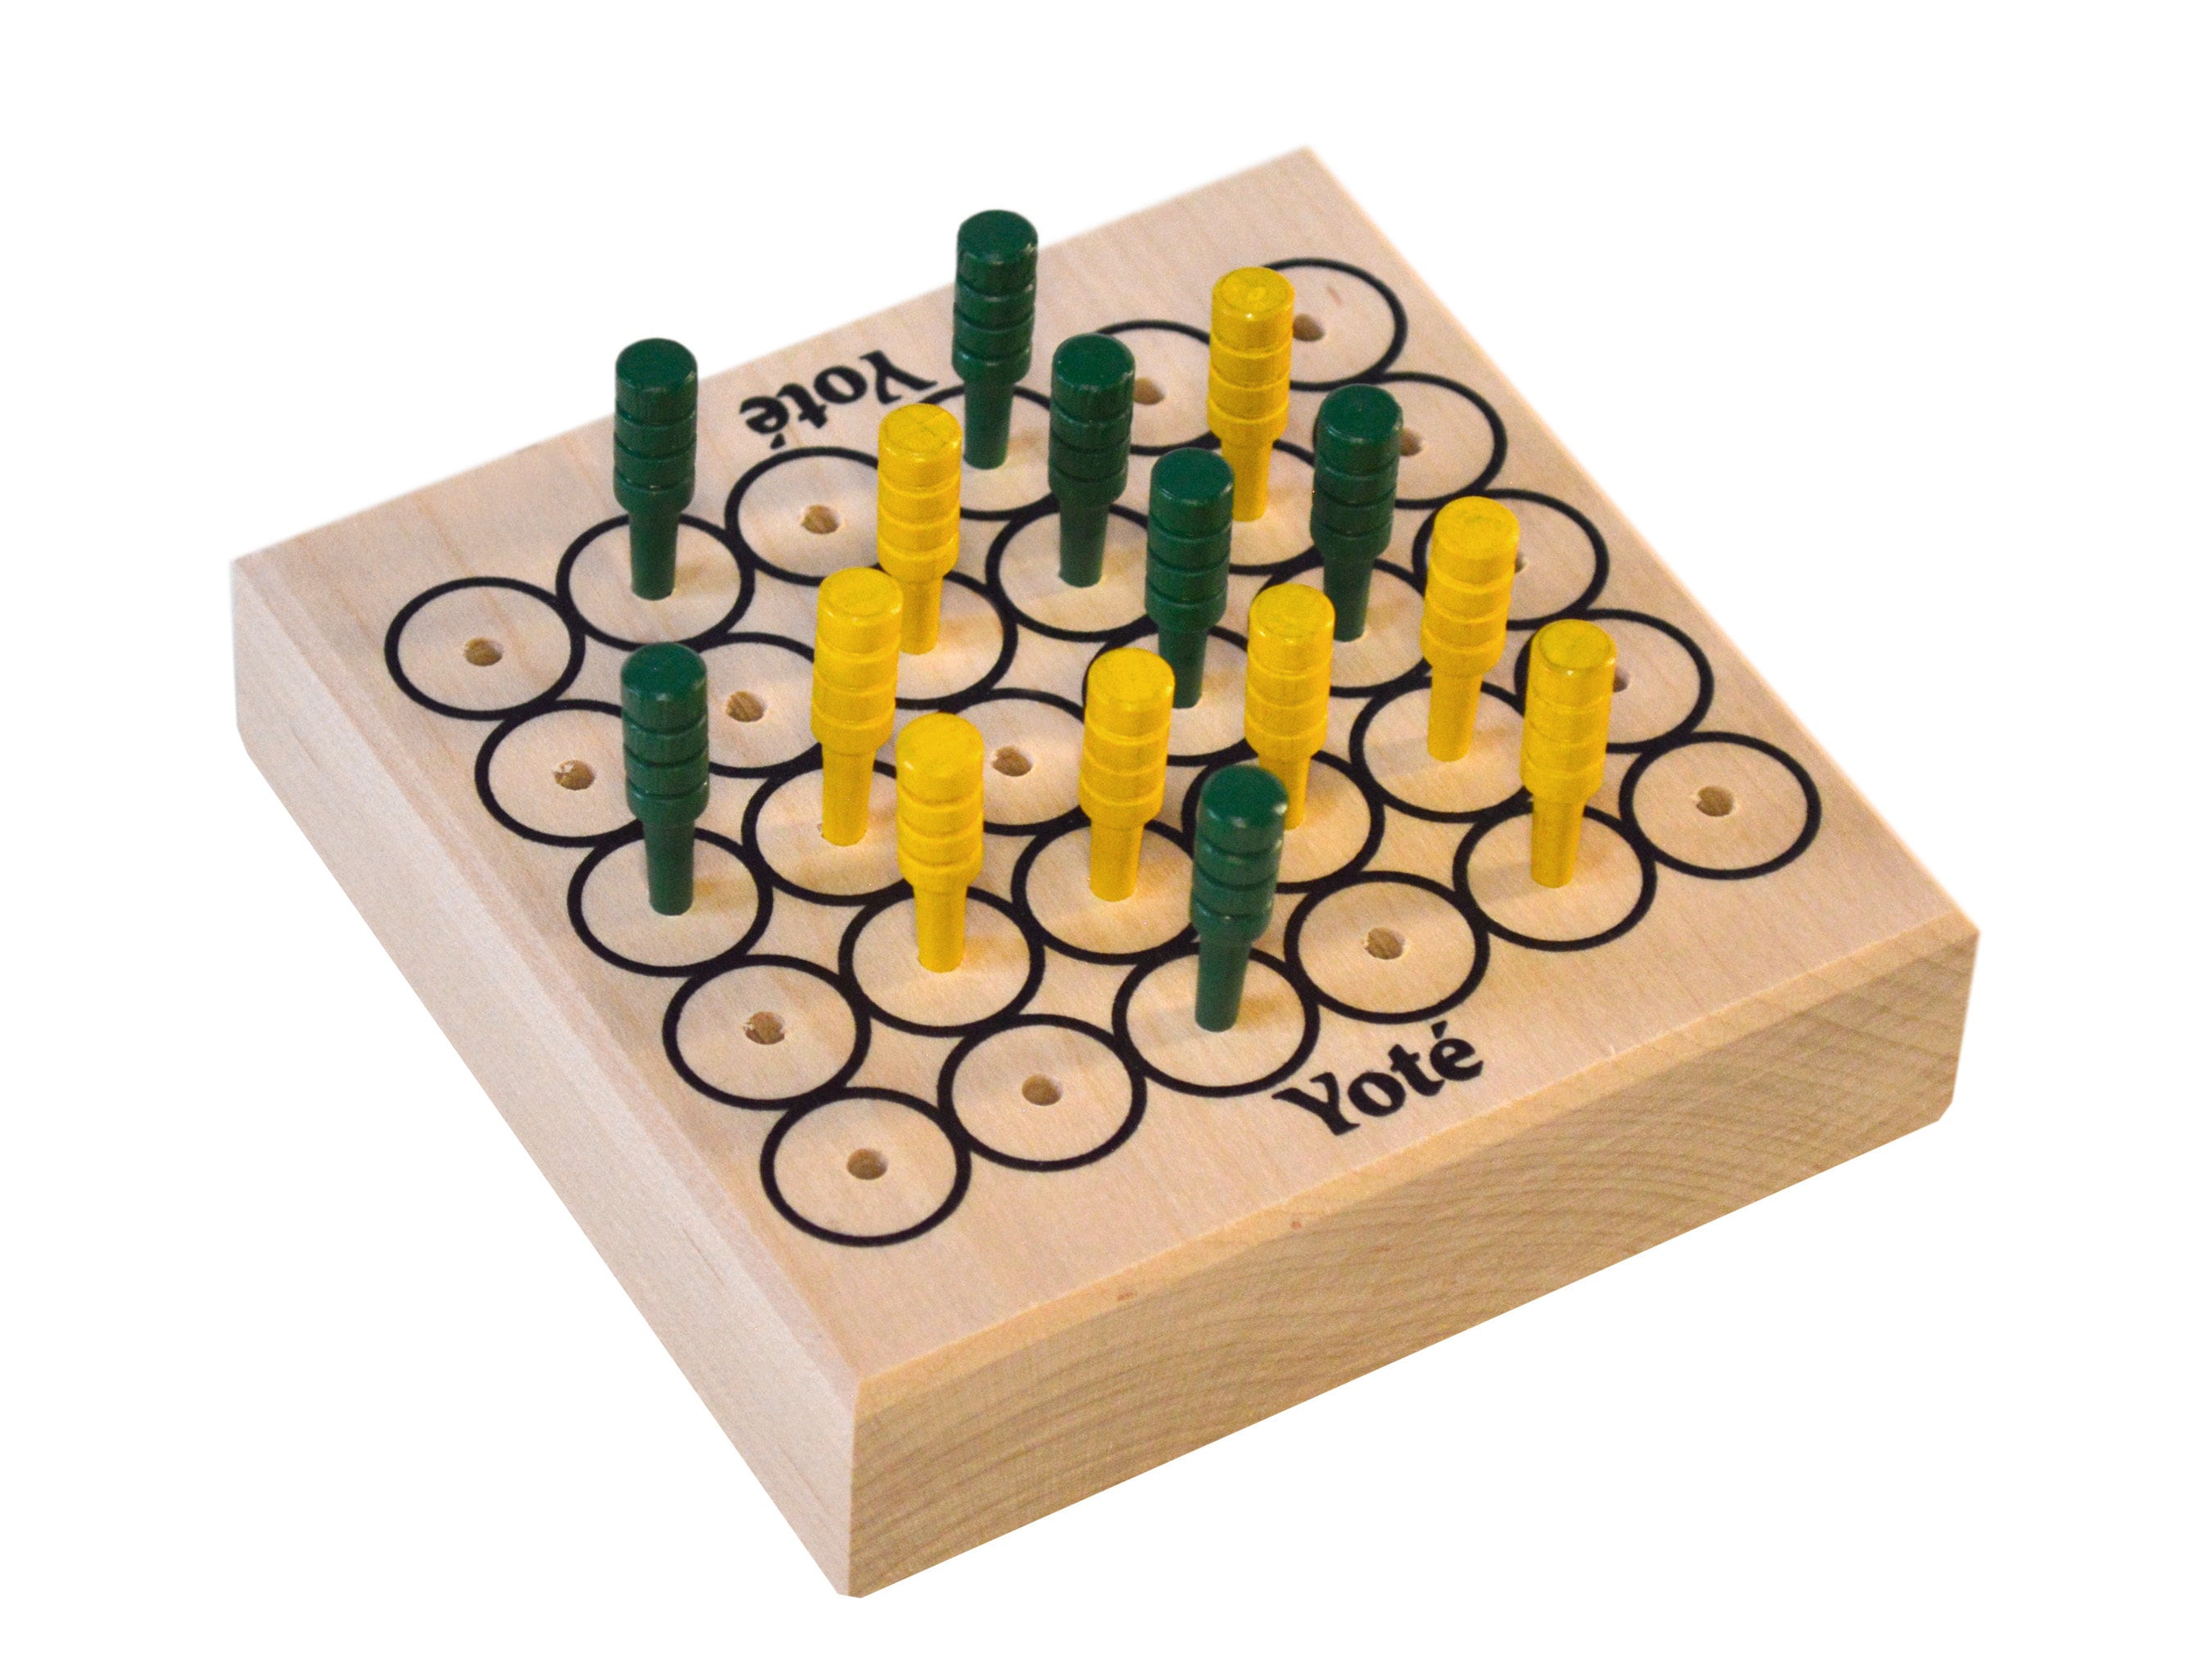 Yoté, Board Game